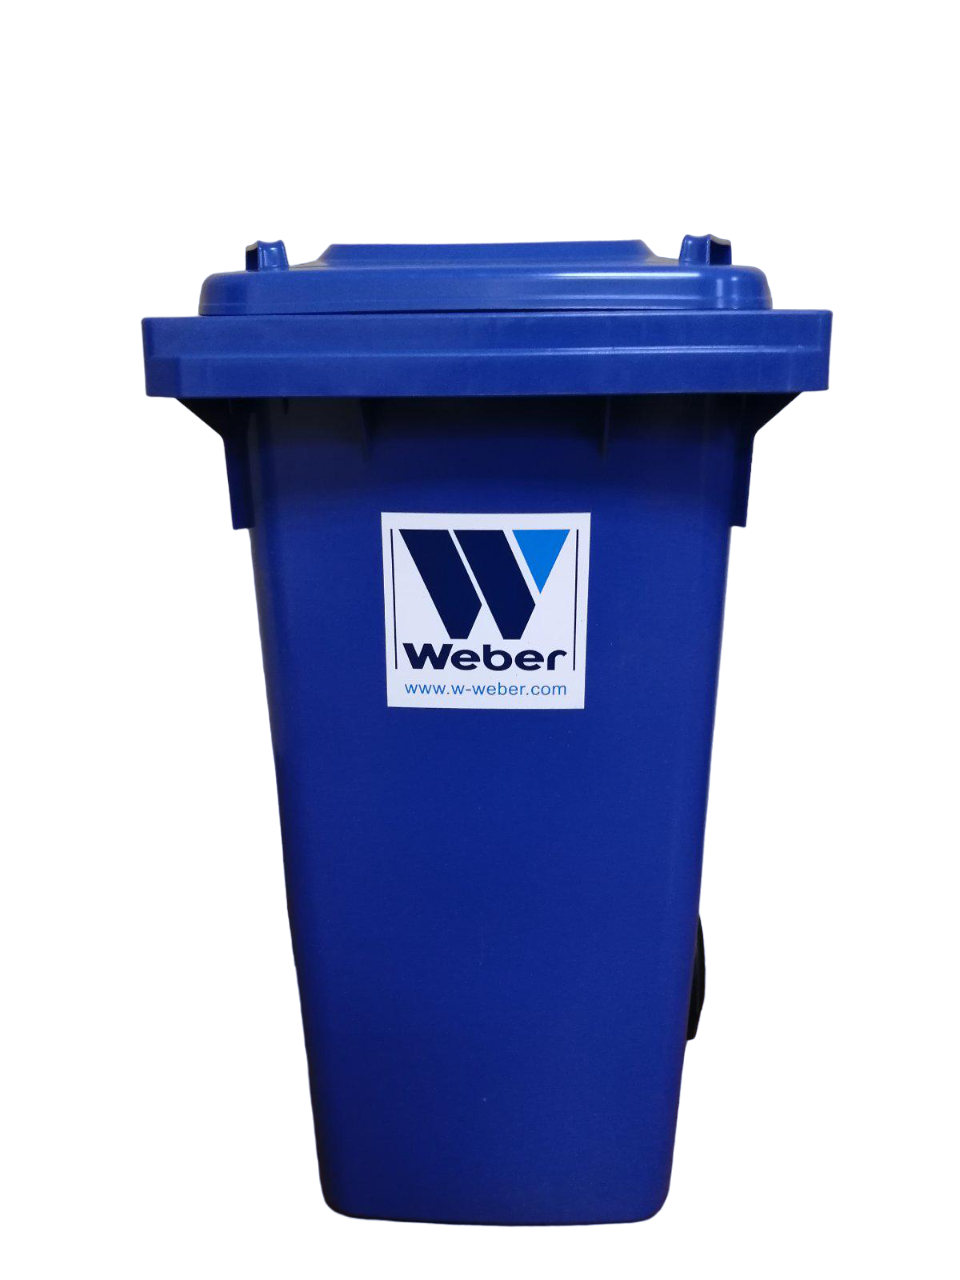 Контейнер для мусора W-weber 120 л Синий (12700566)